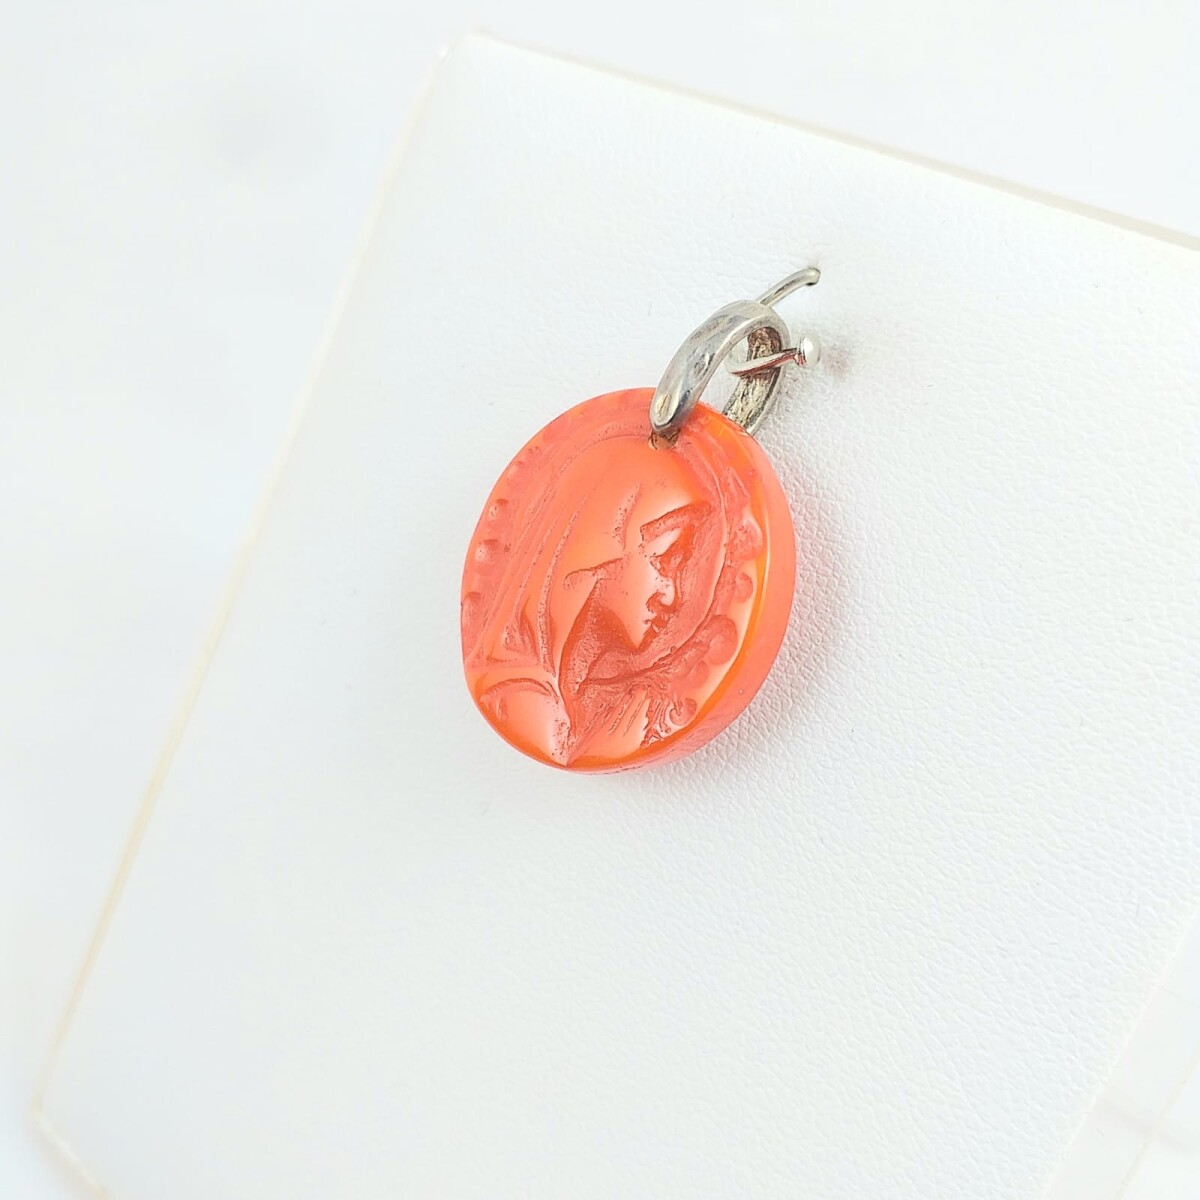 Medalla religiosa en resina de Virgen niña con manto color naranja, medidas 2.2cm, argolla de plata 925. 